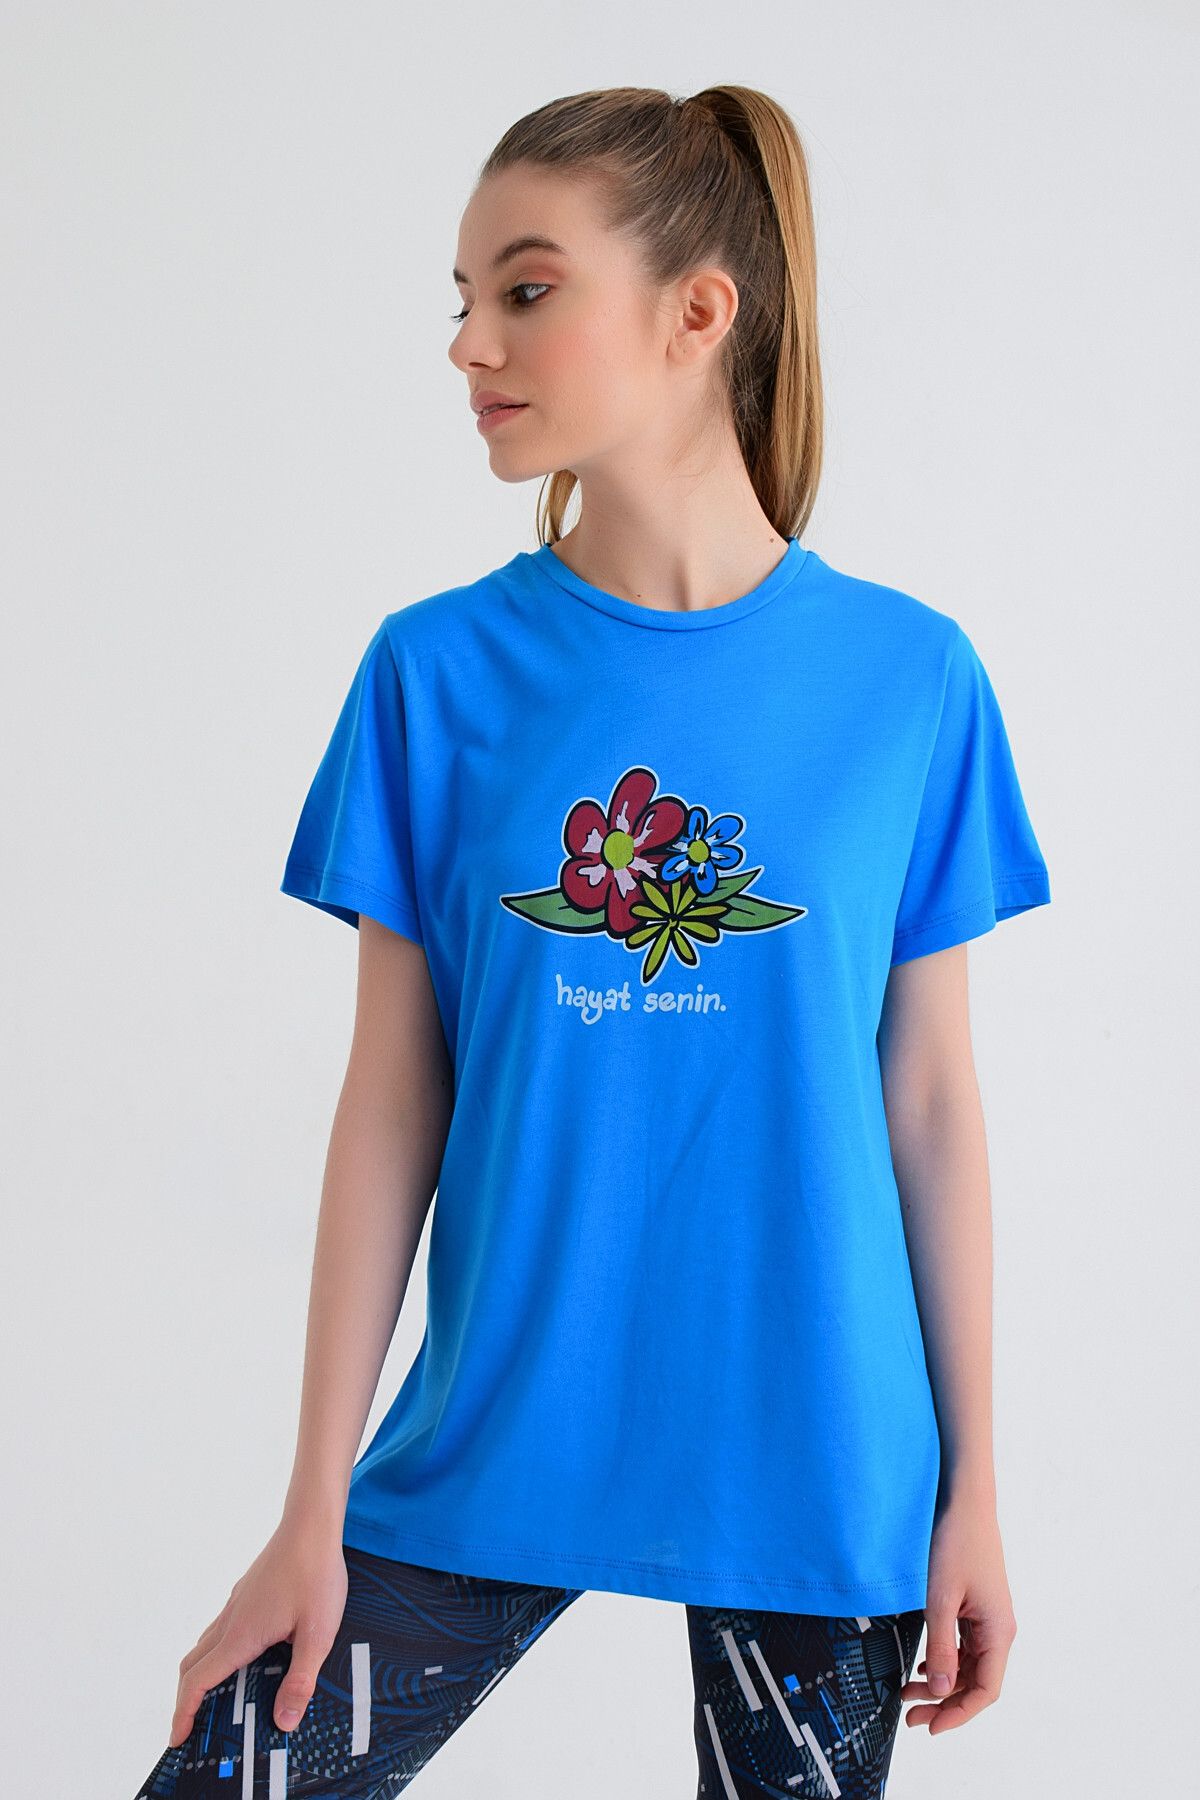 b-fit Kadın Kısa Kollu Baskılı T-shirt Wormie Hayat Senin - Mavi